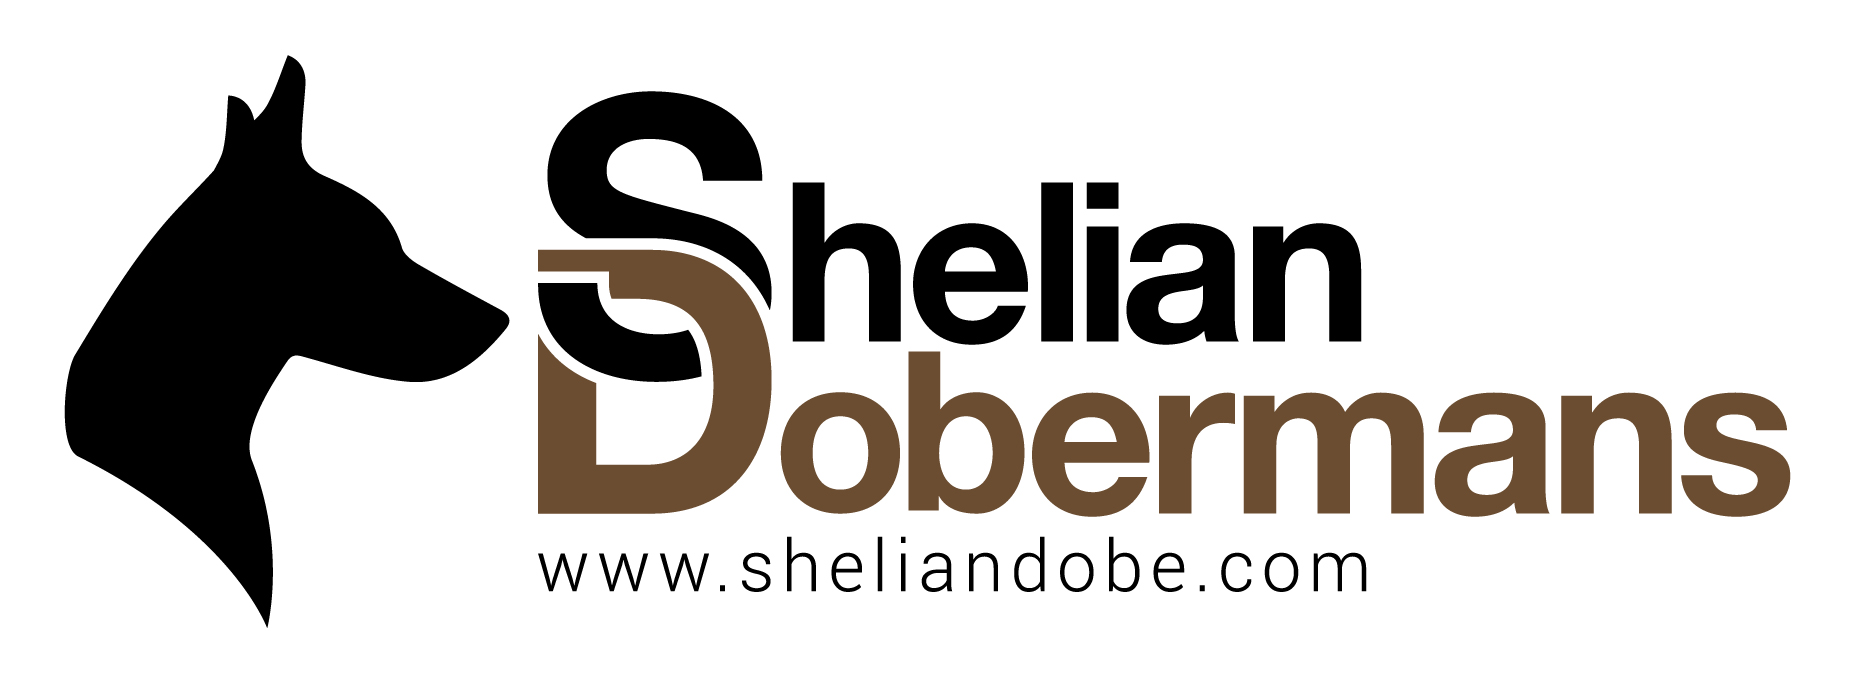 Sheliandobe